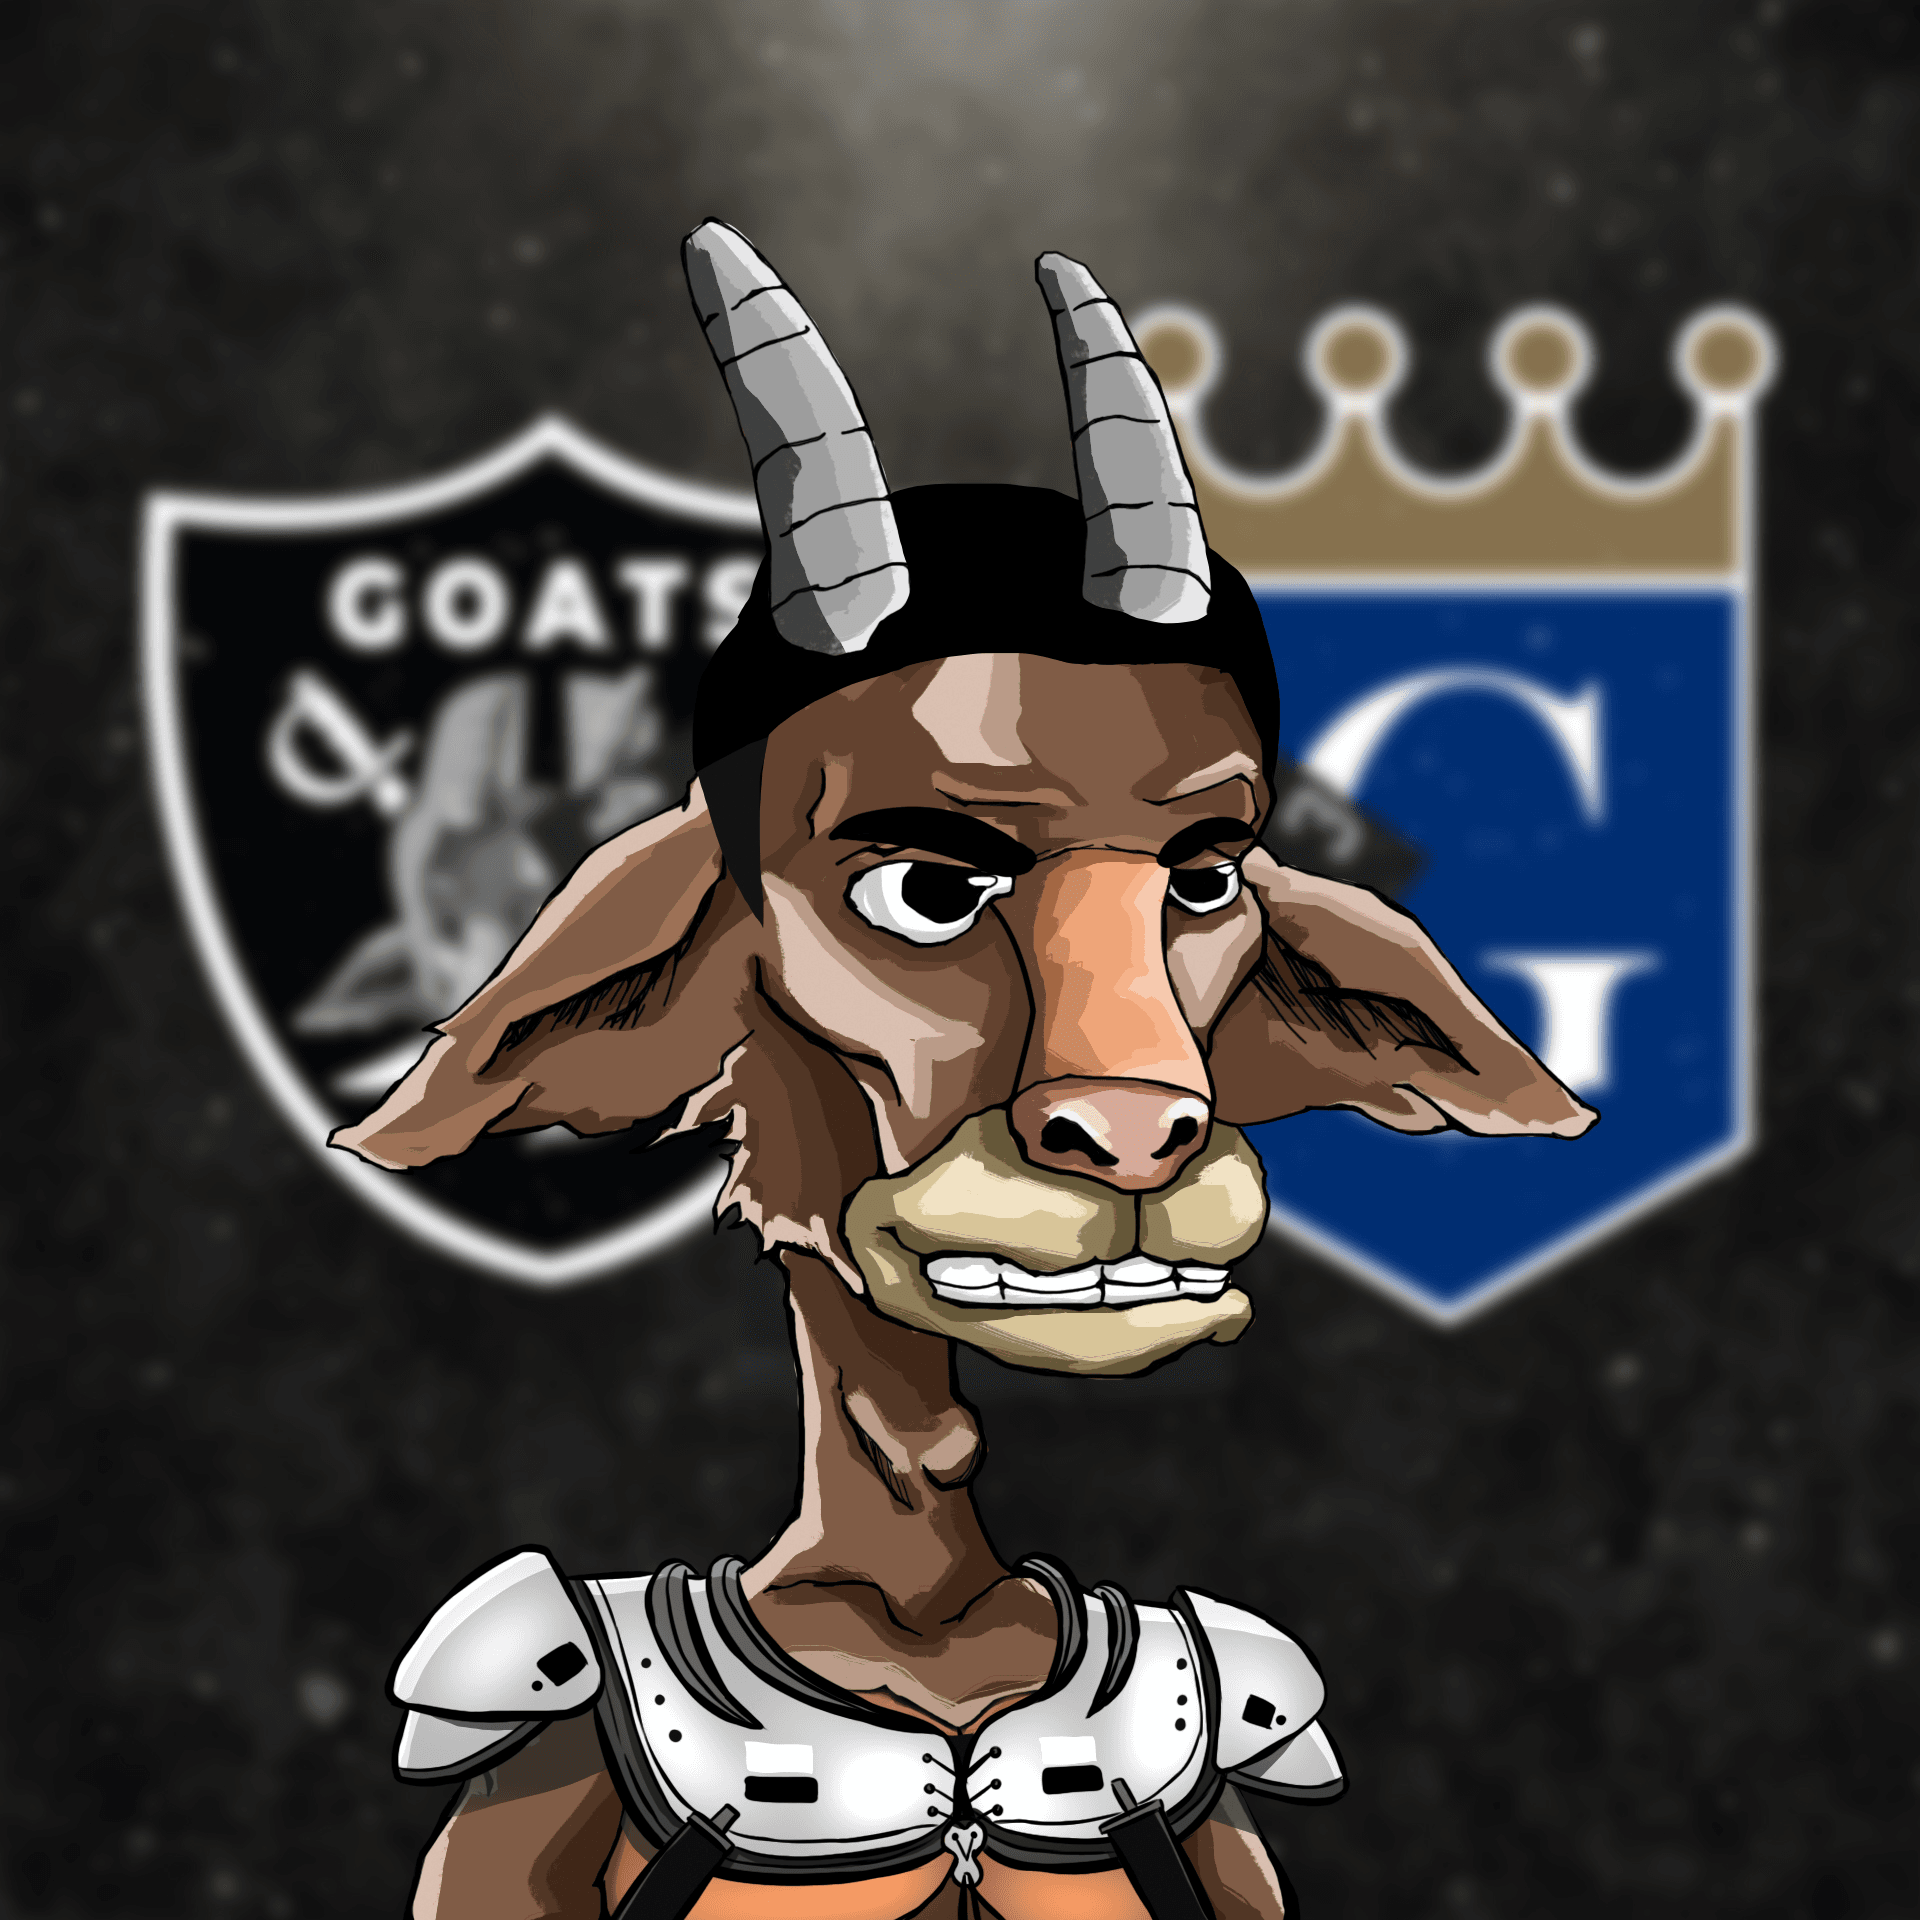 Goat Society #7718